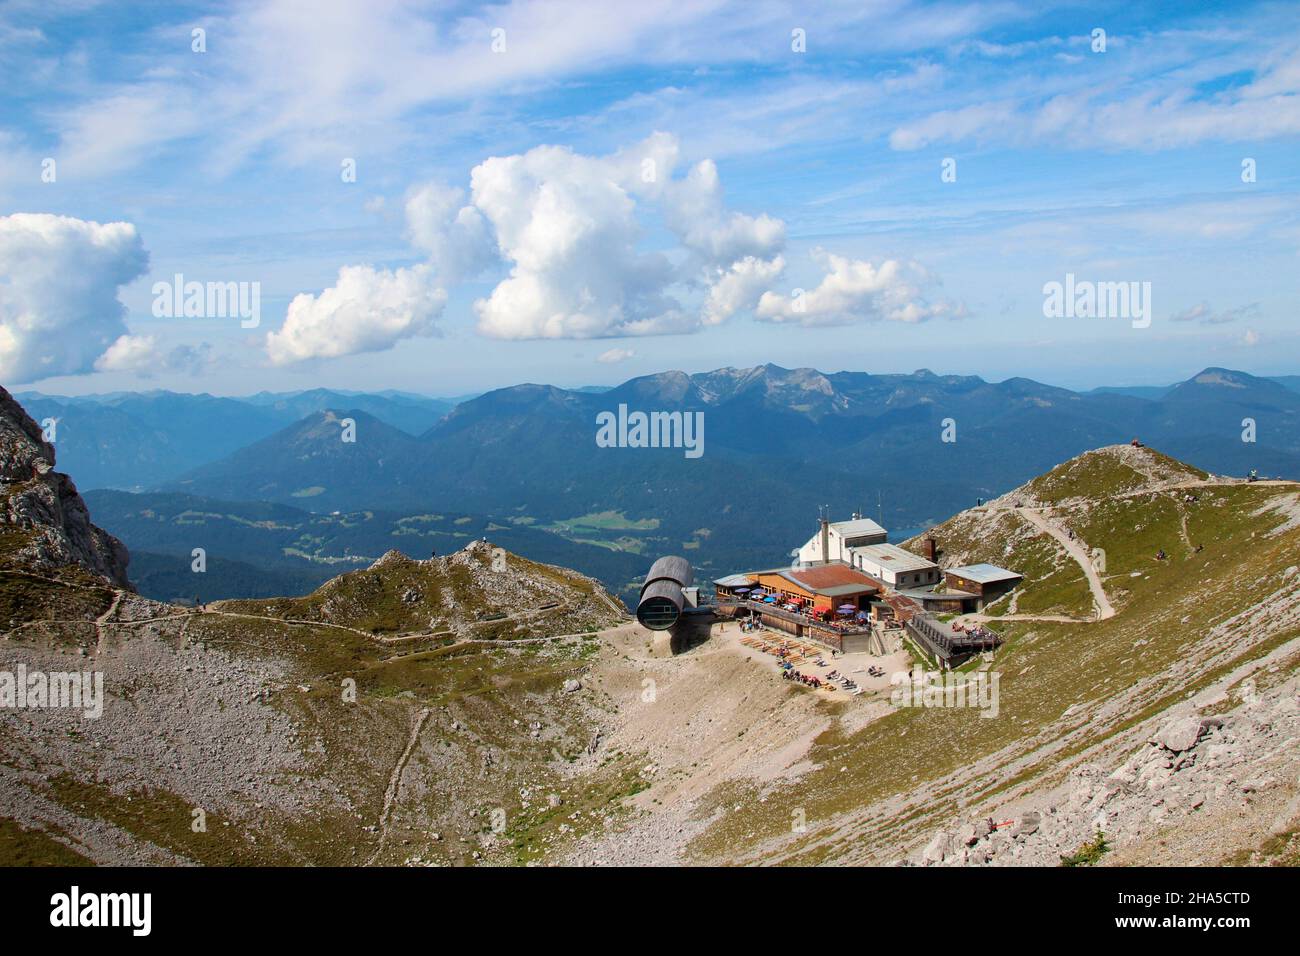 centre d'information sur la nature bergwelt karwendel avec télescope géant, station de montagne karwendelbahn, montagnes karwendel, mittenwald, bavière, allemagne Banque D'Images